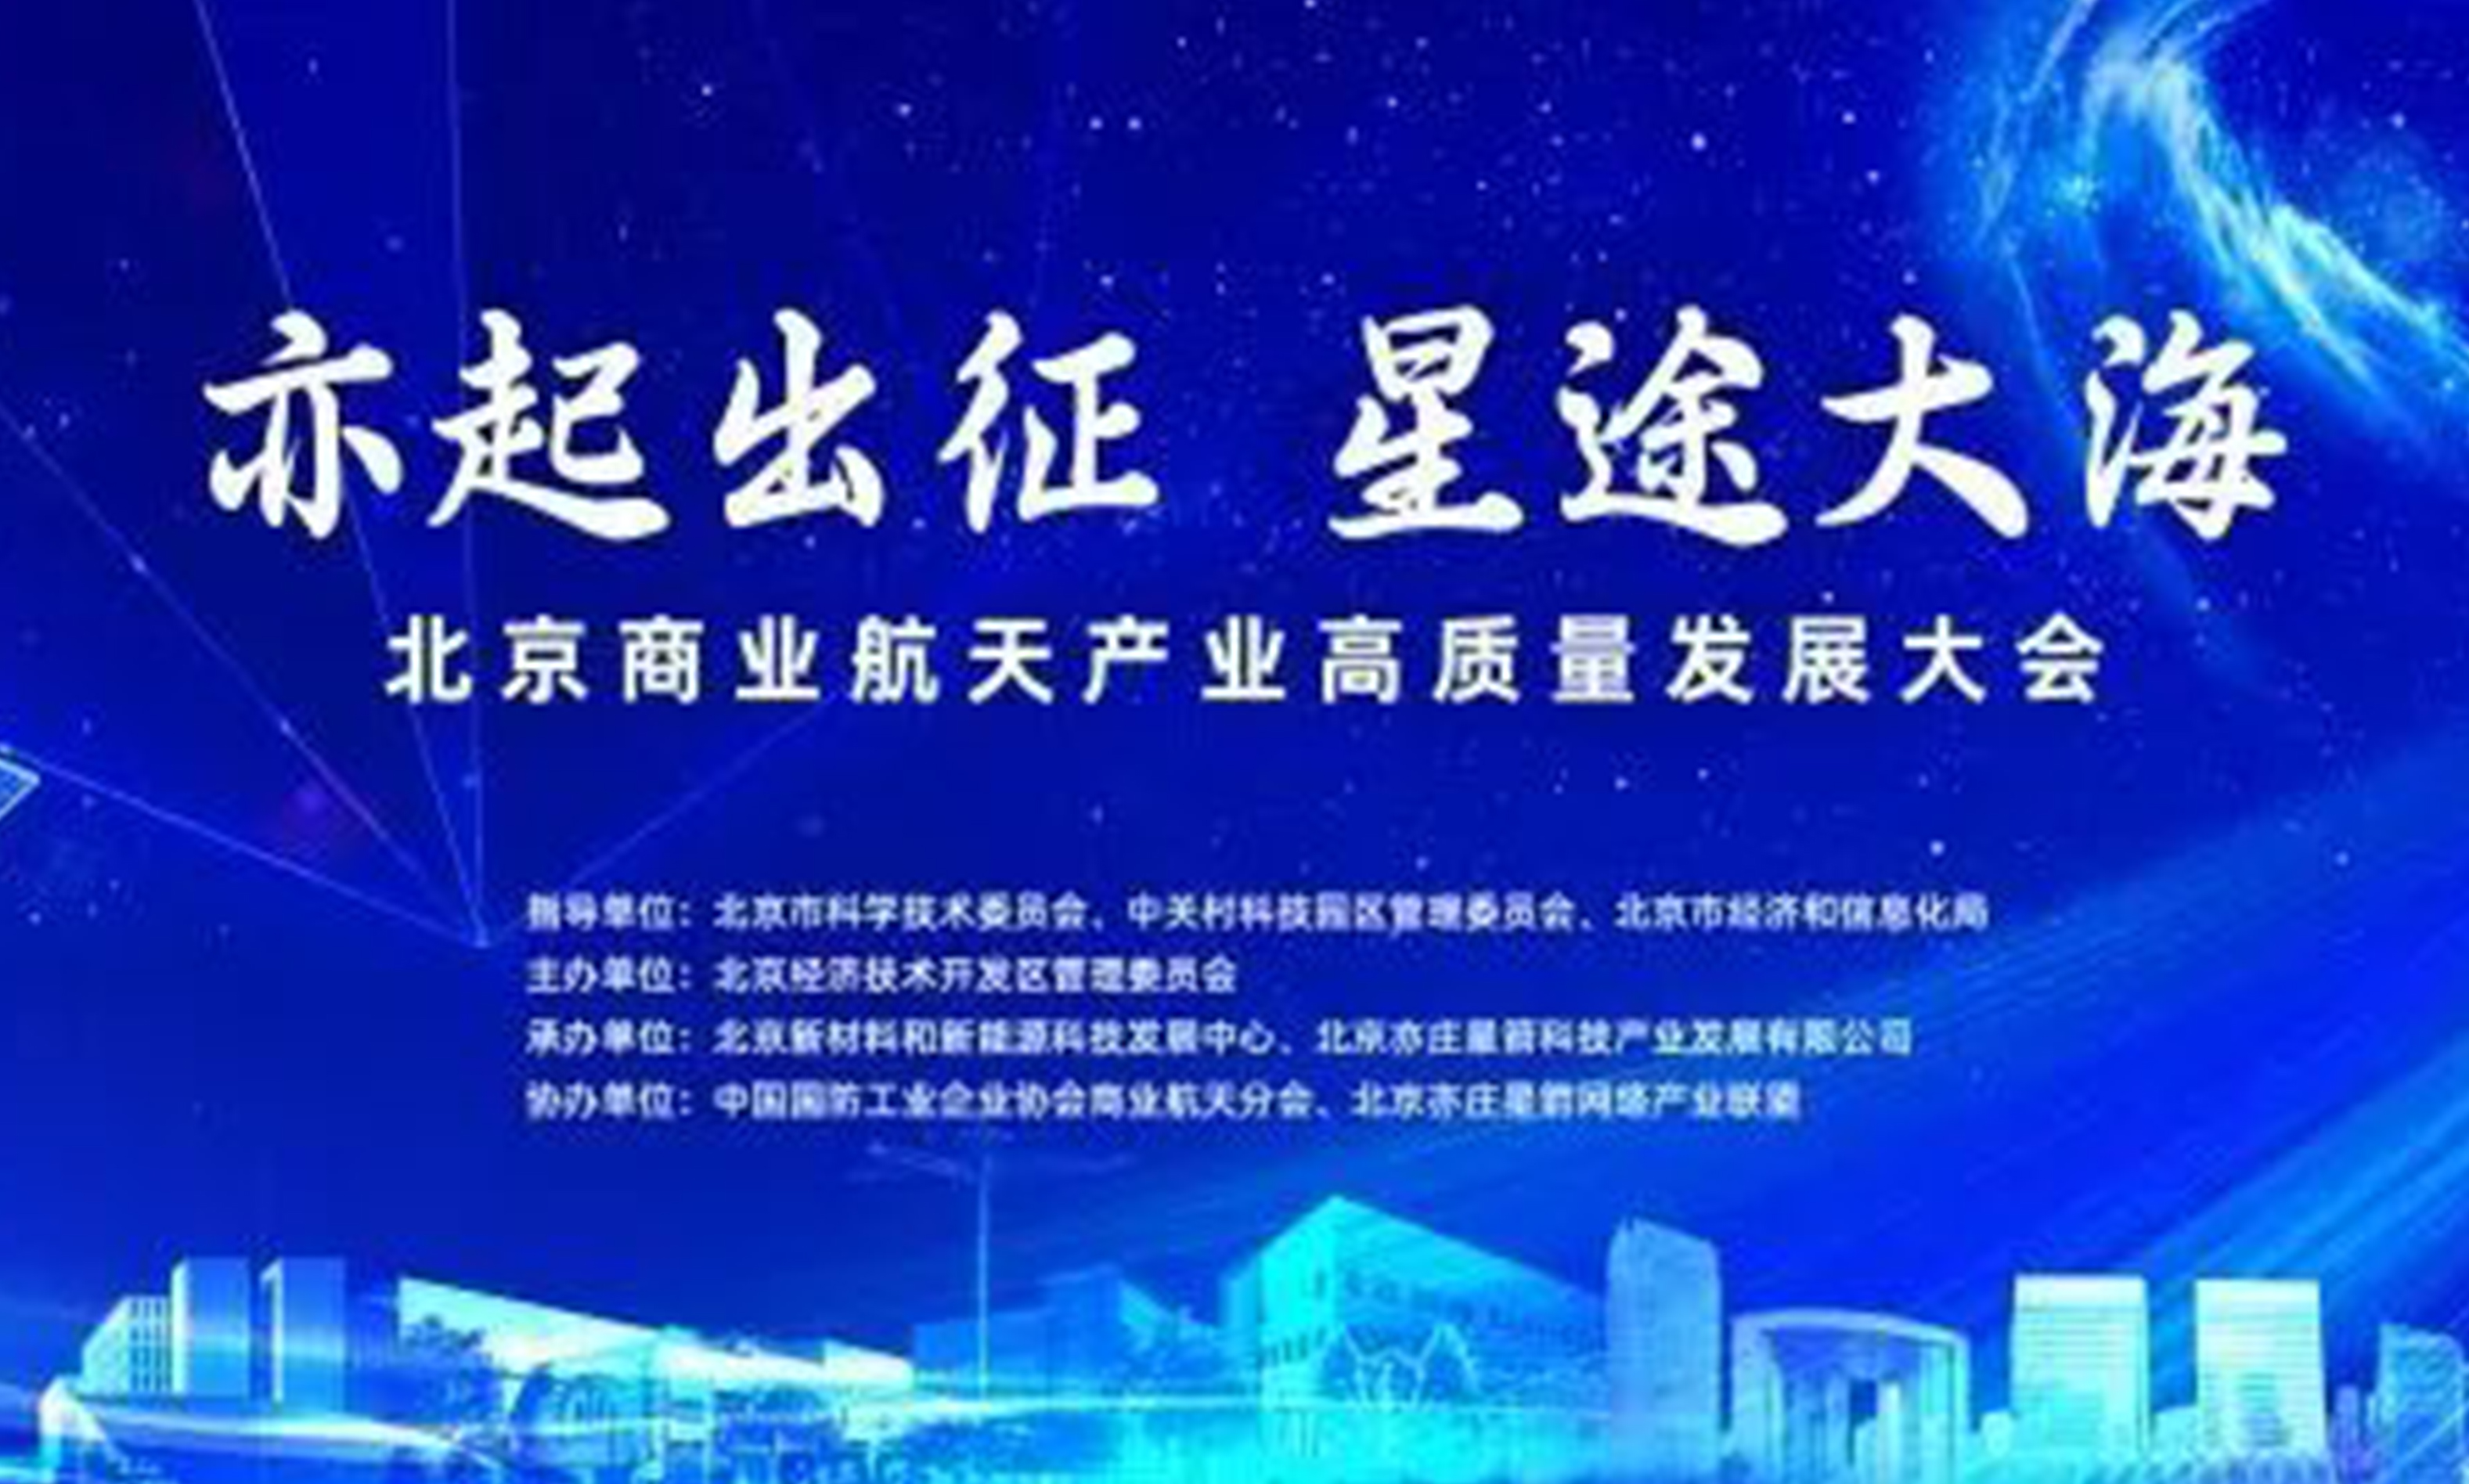 星网宇达受邀参加北京商业航天产业高质量发展大会